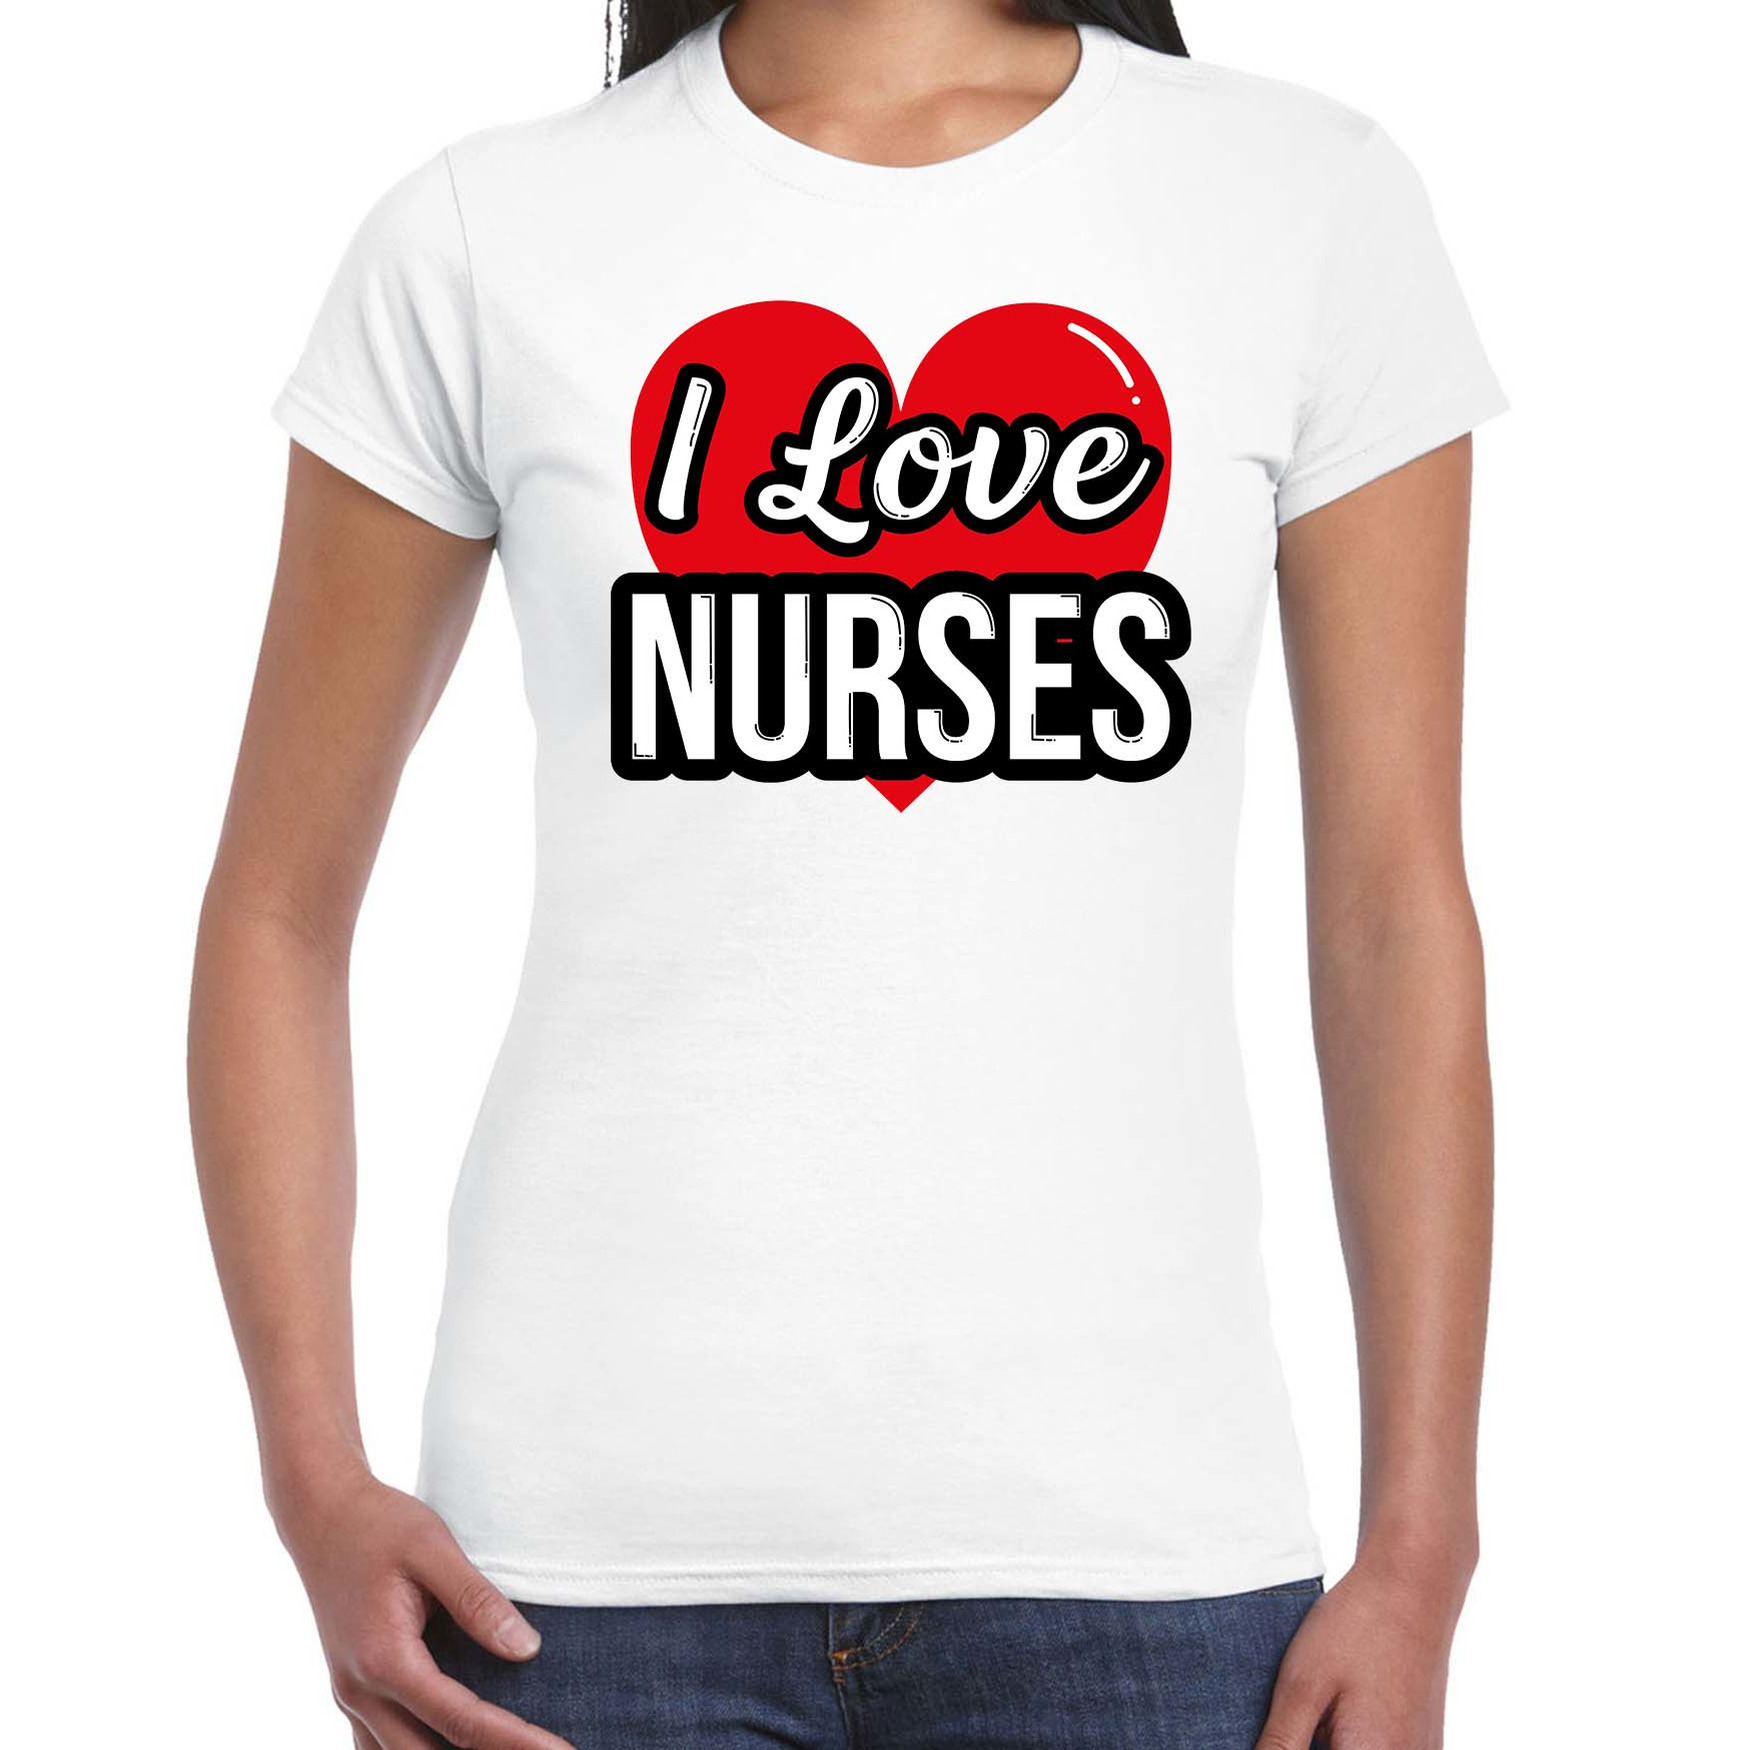 I love nurses - zusters verkleed t-shirt wit voor dames - Outfit verkleed feest